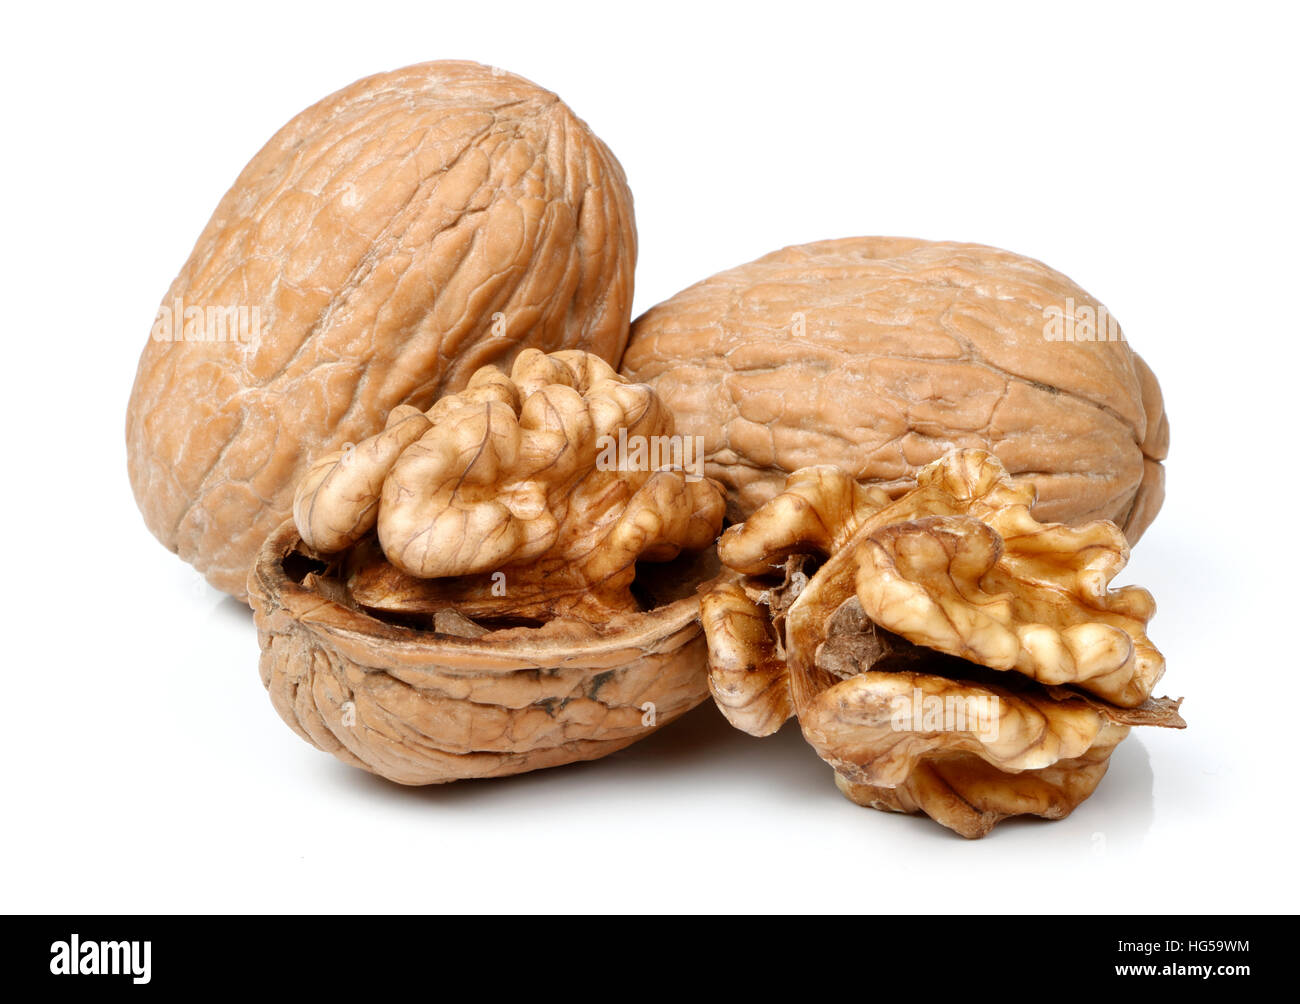 whole-walnut-and-half-walnut-piece-HG59WM.jpg